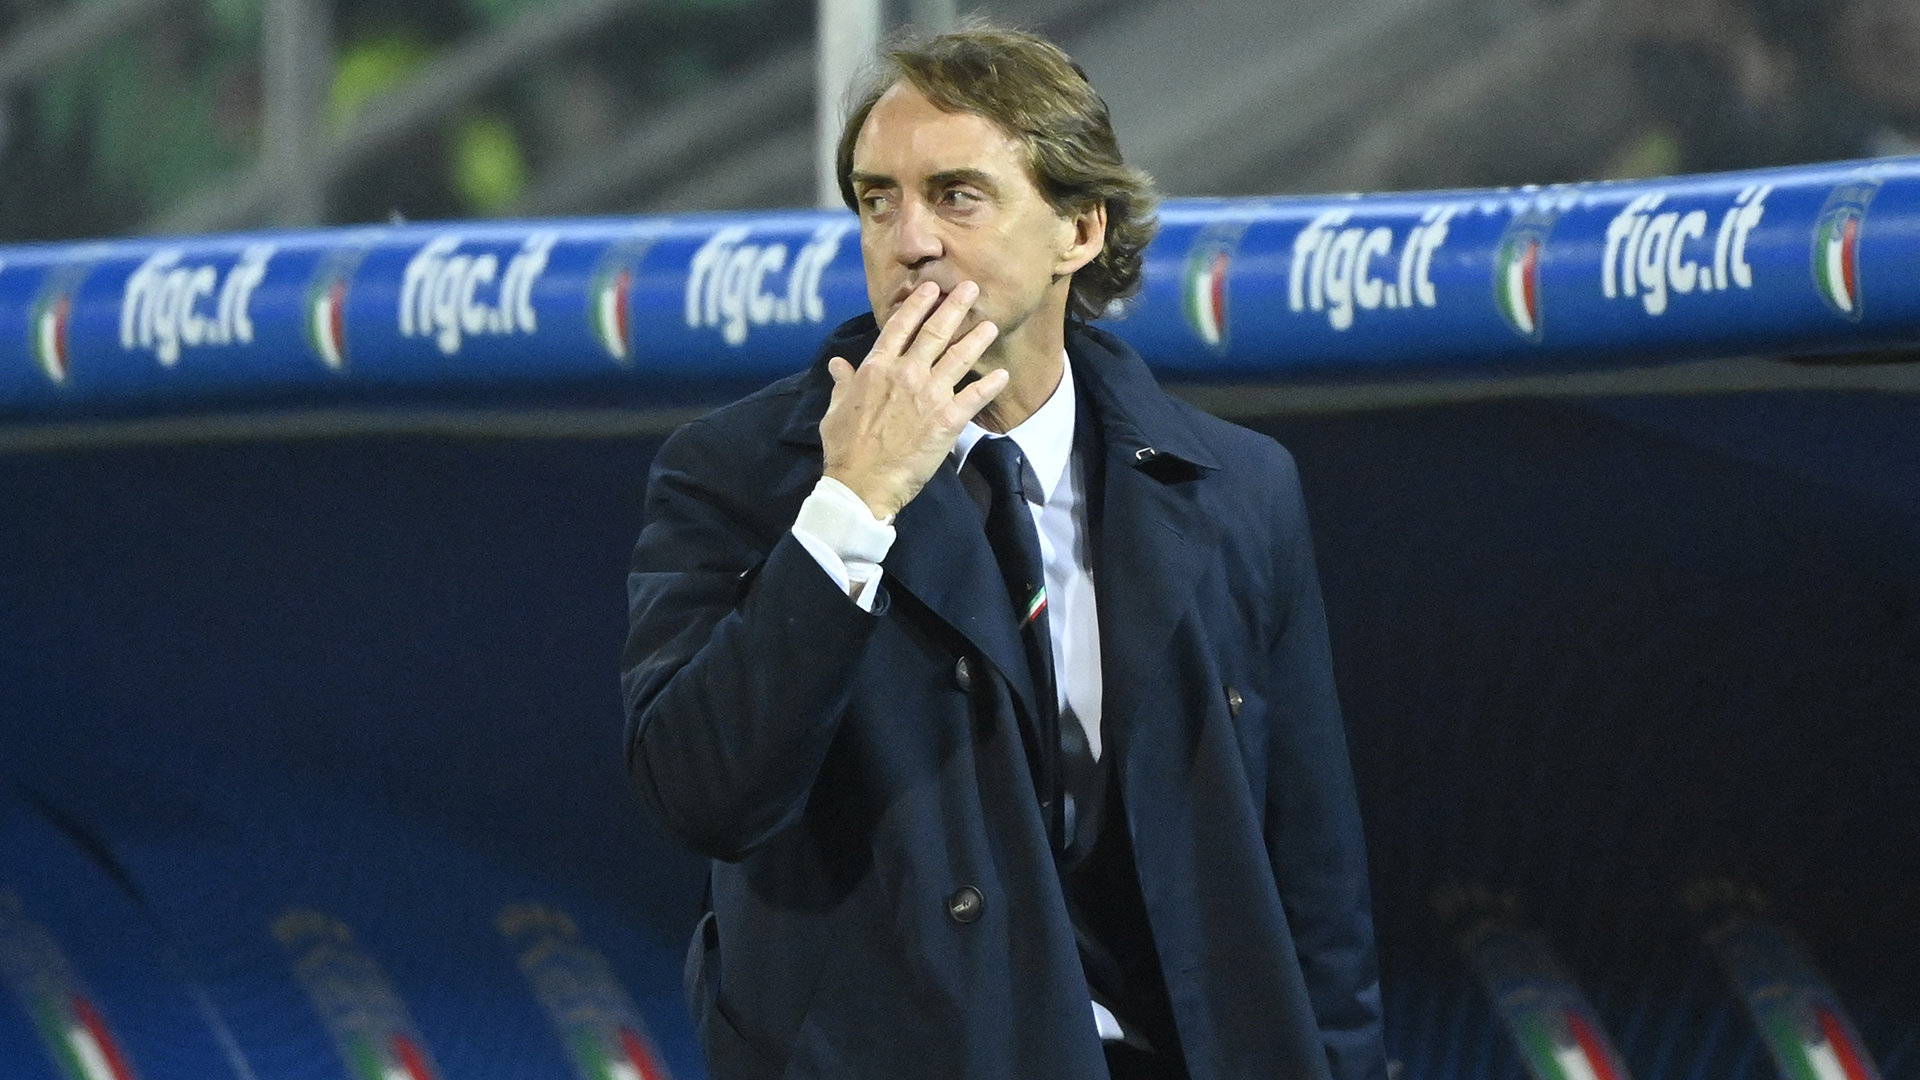 El futuro de Roberto Mancini está en dudas tras la eliminación (AFP)